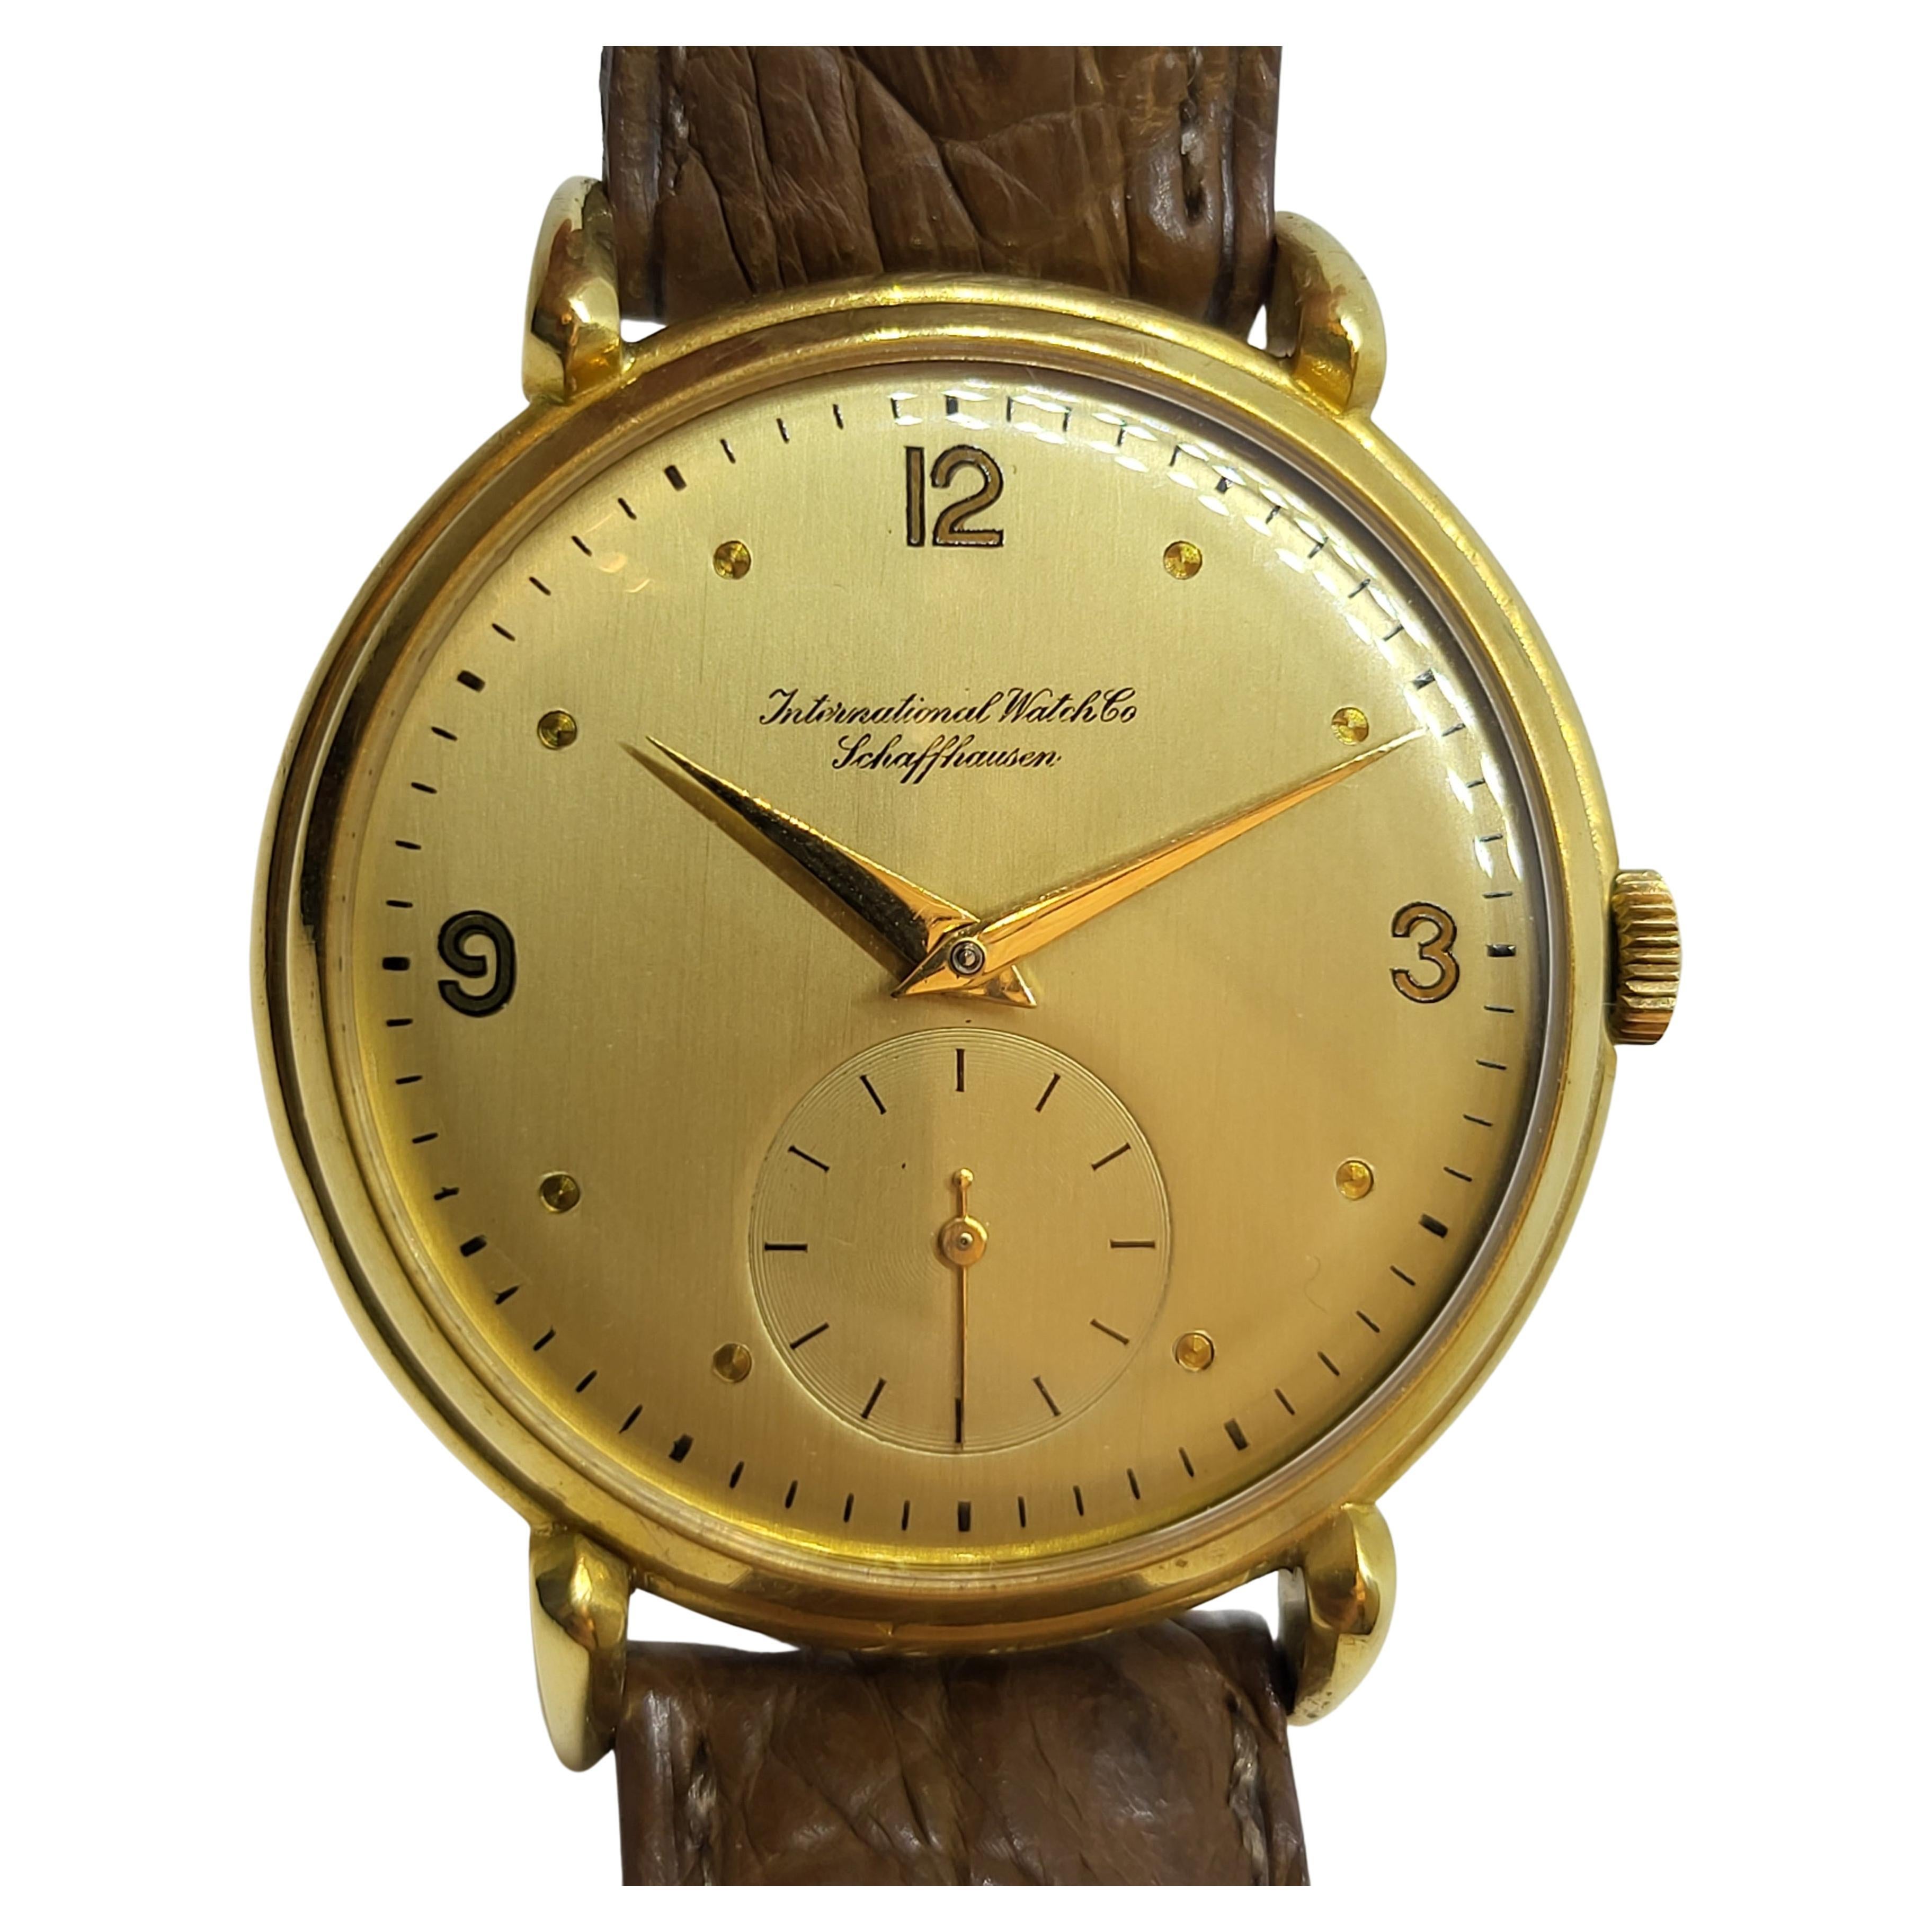 18 Kt Gold IWC Armbanduhr Kaliber 88 Seltene Handaufzug Calatrava

Äußerst seltene IWC Sammler Uhr in neuwertigem Zustand große Größe für die 1950 s

Uhrwerk / Mechanischer Handaufzug

Gehäuse: 18 kt massivem Gold 36,5 mm

Riemen : Handgefertigtes